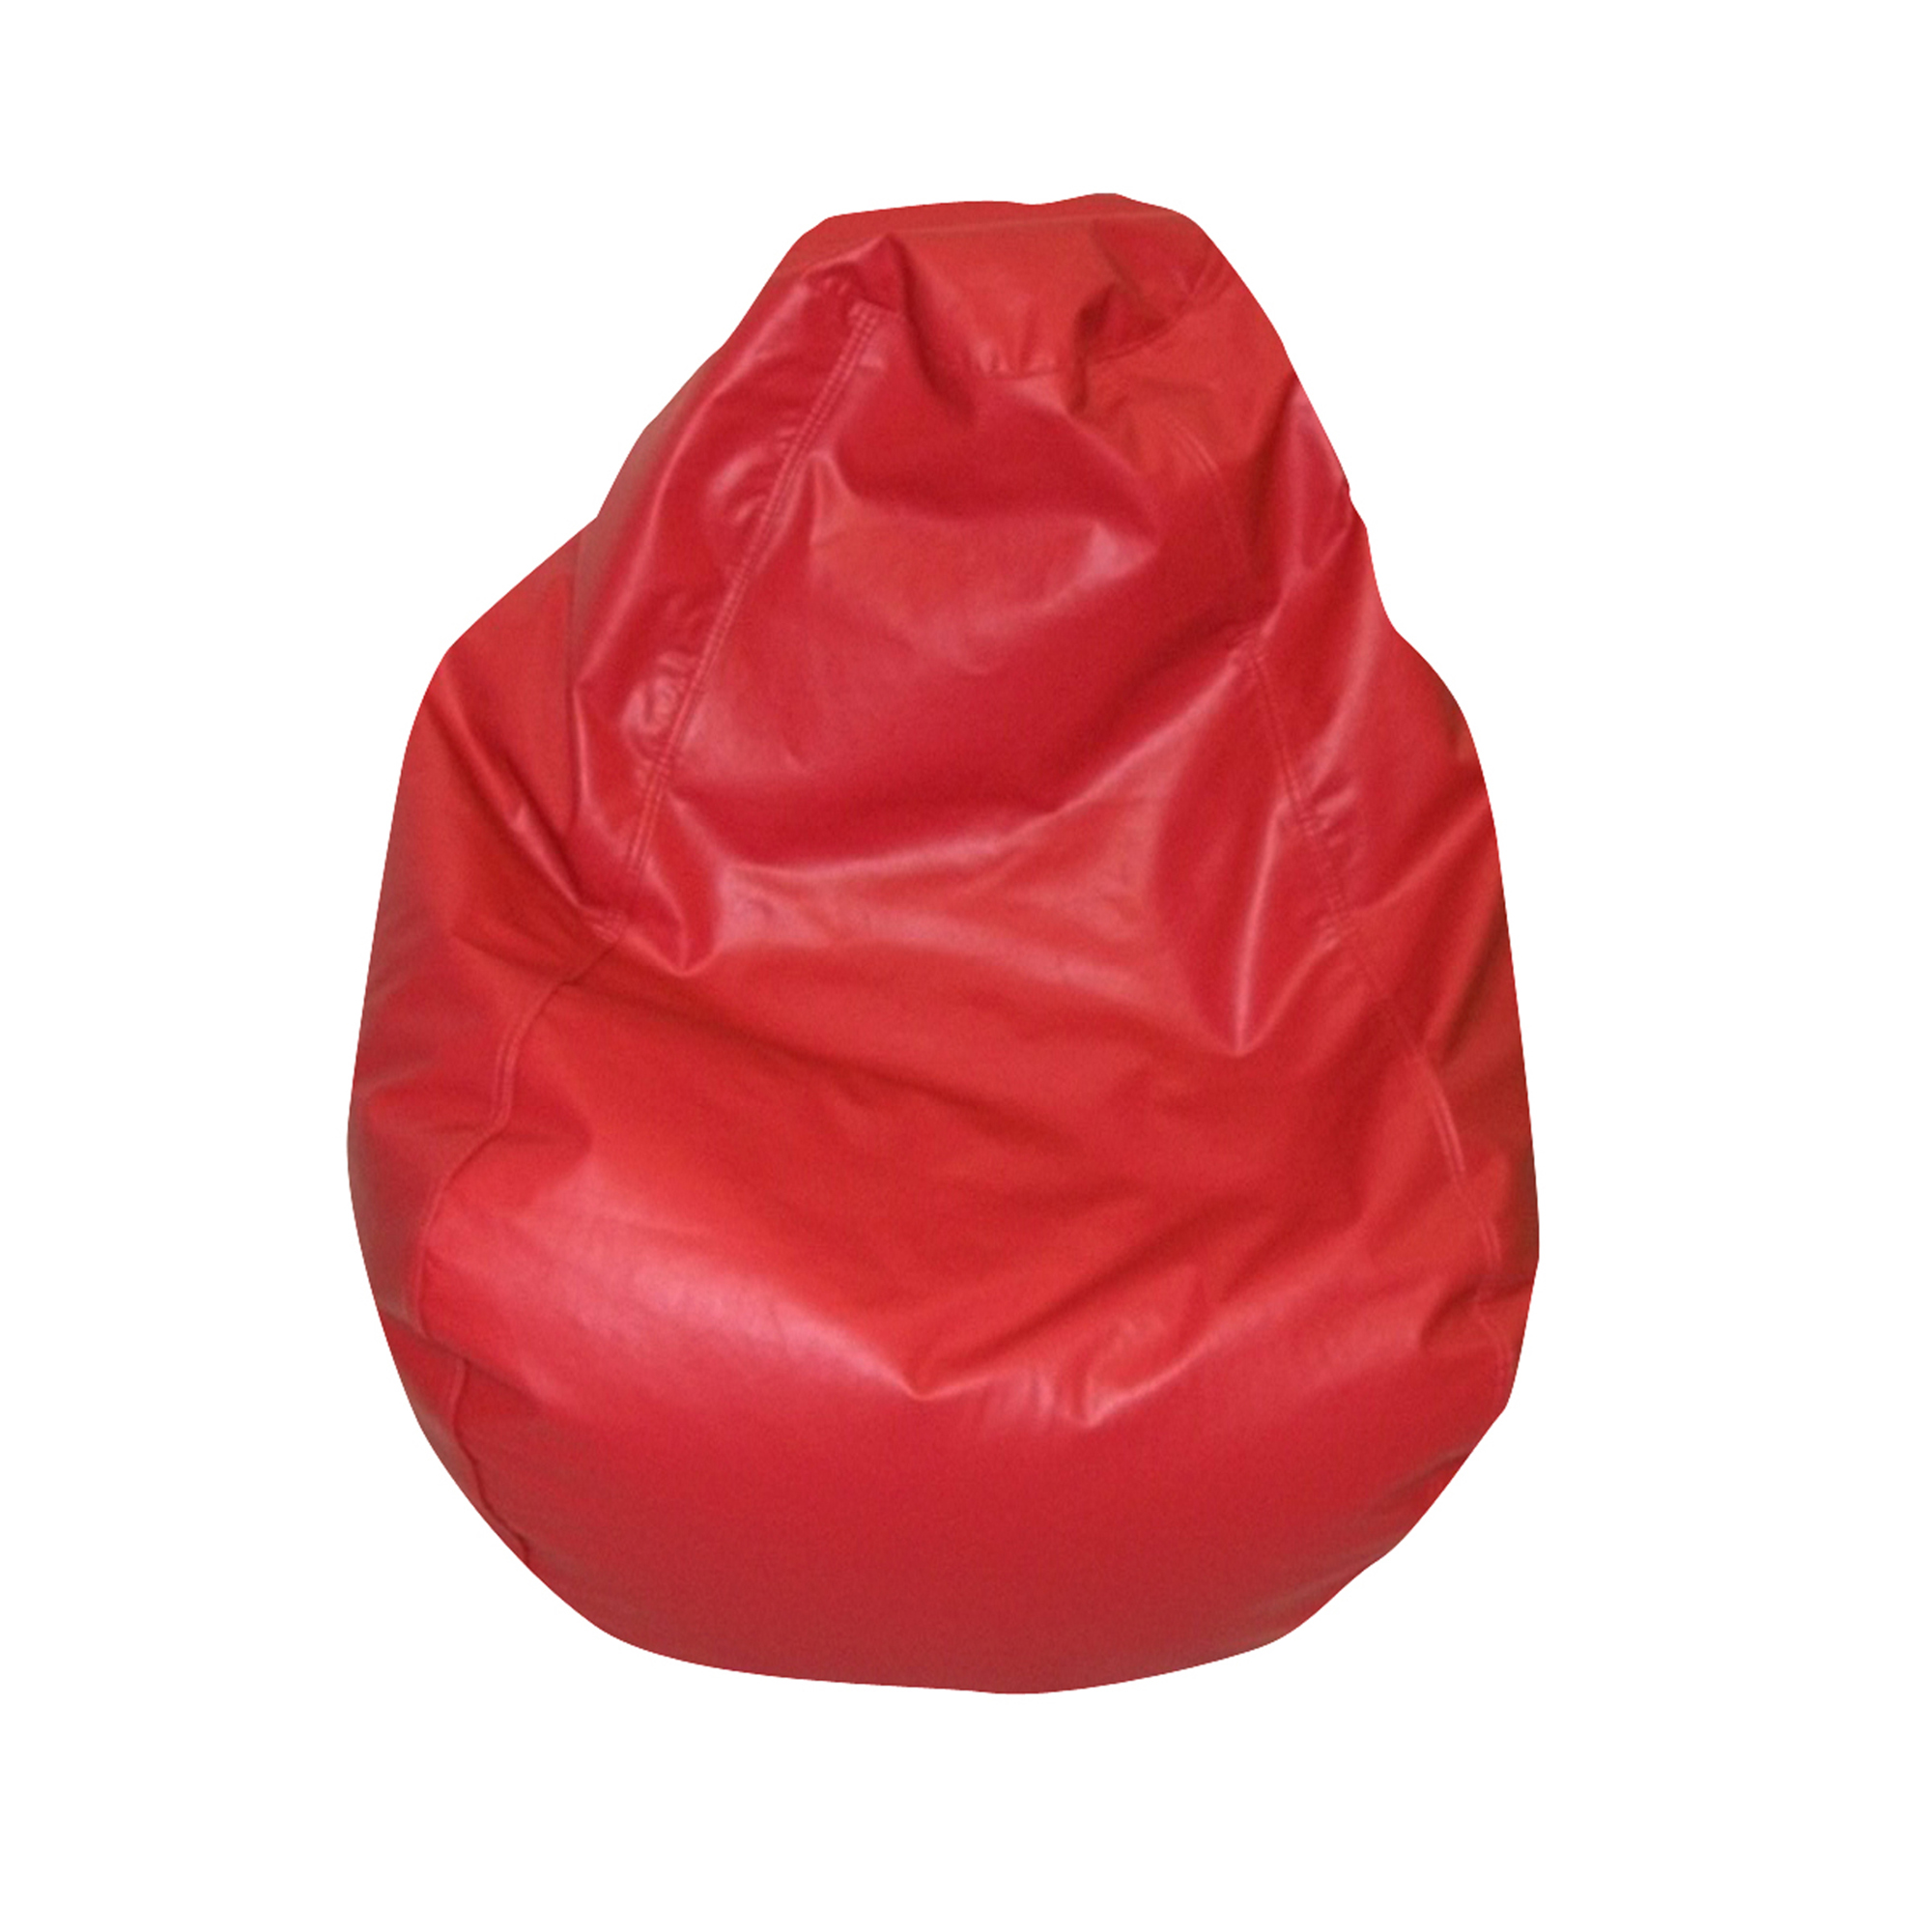 Tear Drop Bean Bag - Red